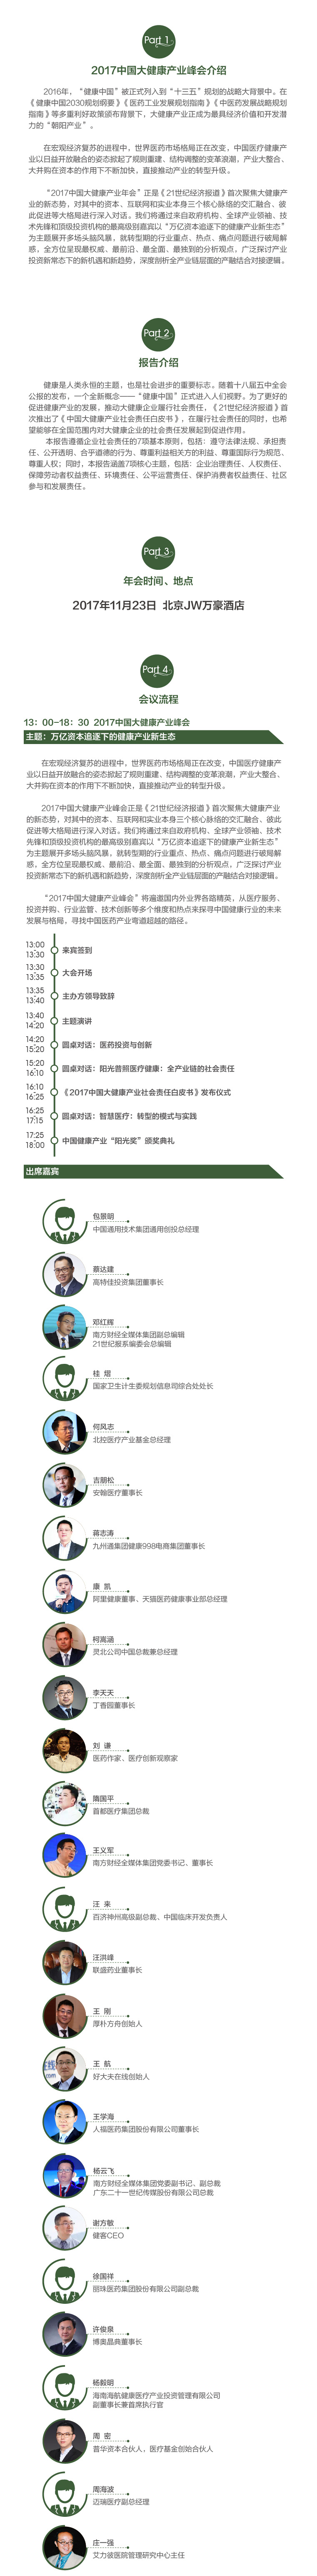 2017中国大健康产业峰会